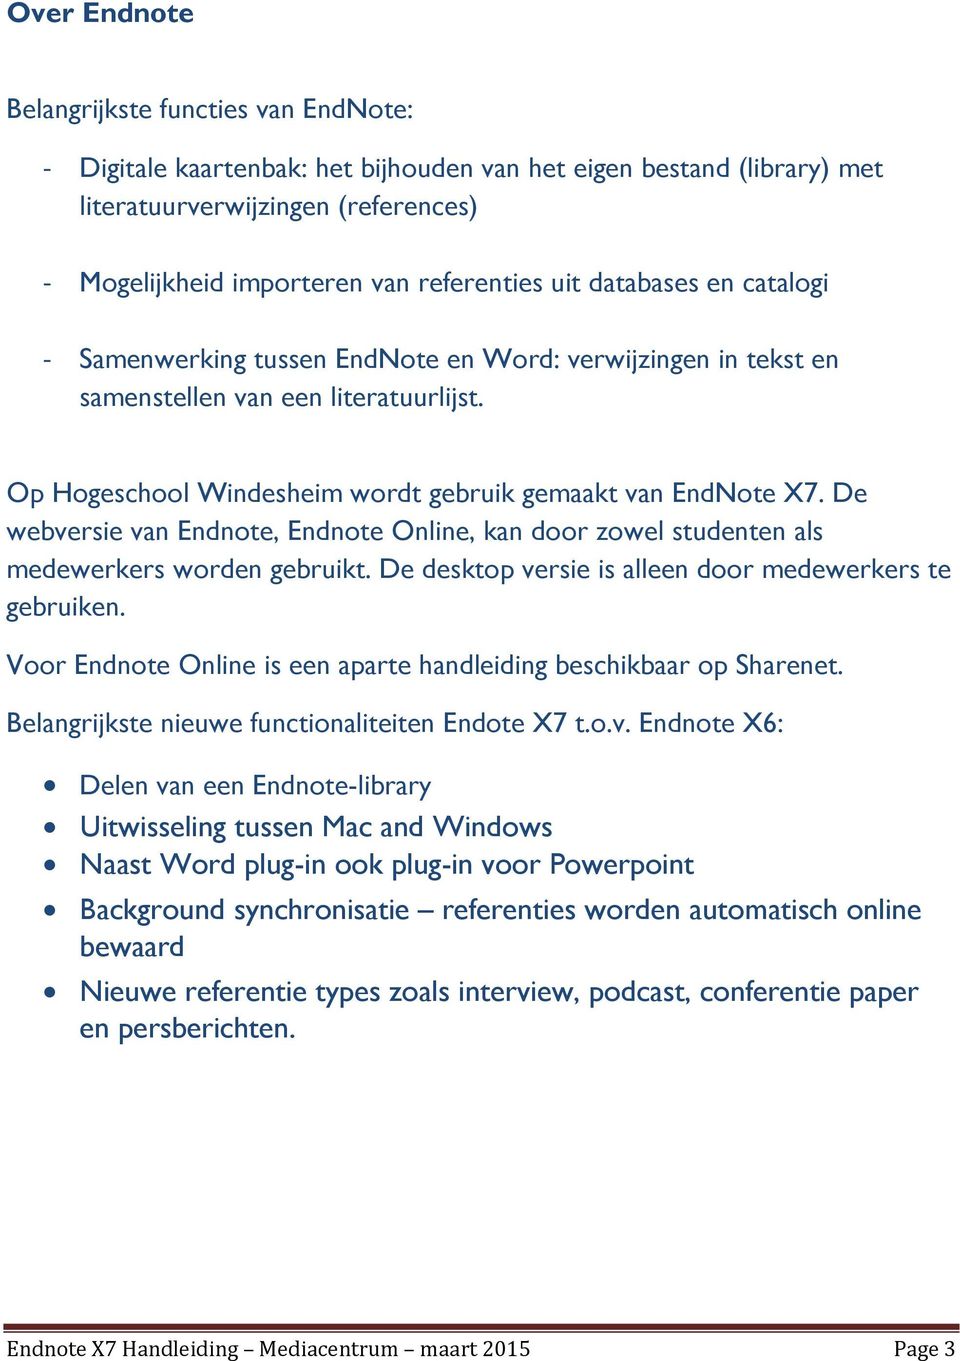 De webversie van Endnote, Endnote Online, kan door zowel studenten als medewerkers worden gebruikt. De desktop versie is alleen door medewerkers te gebruiken.